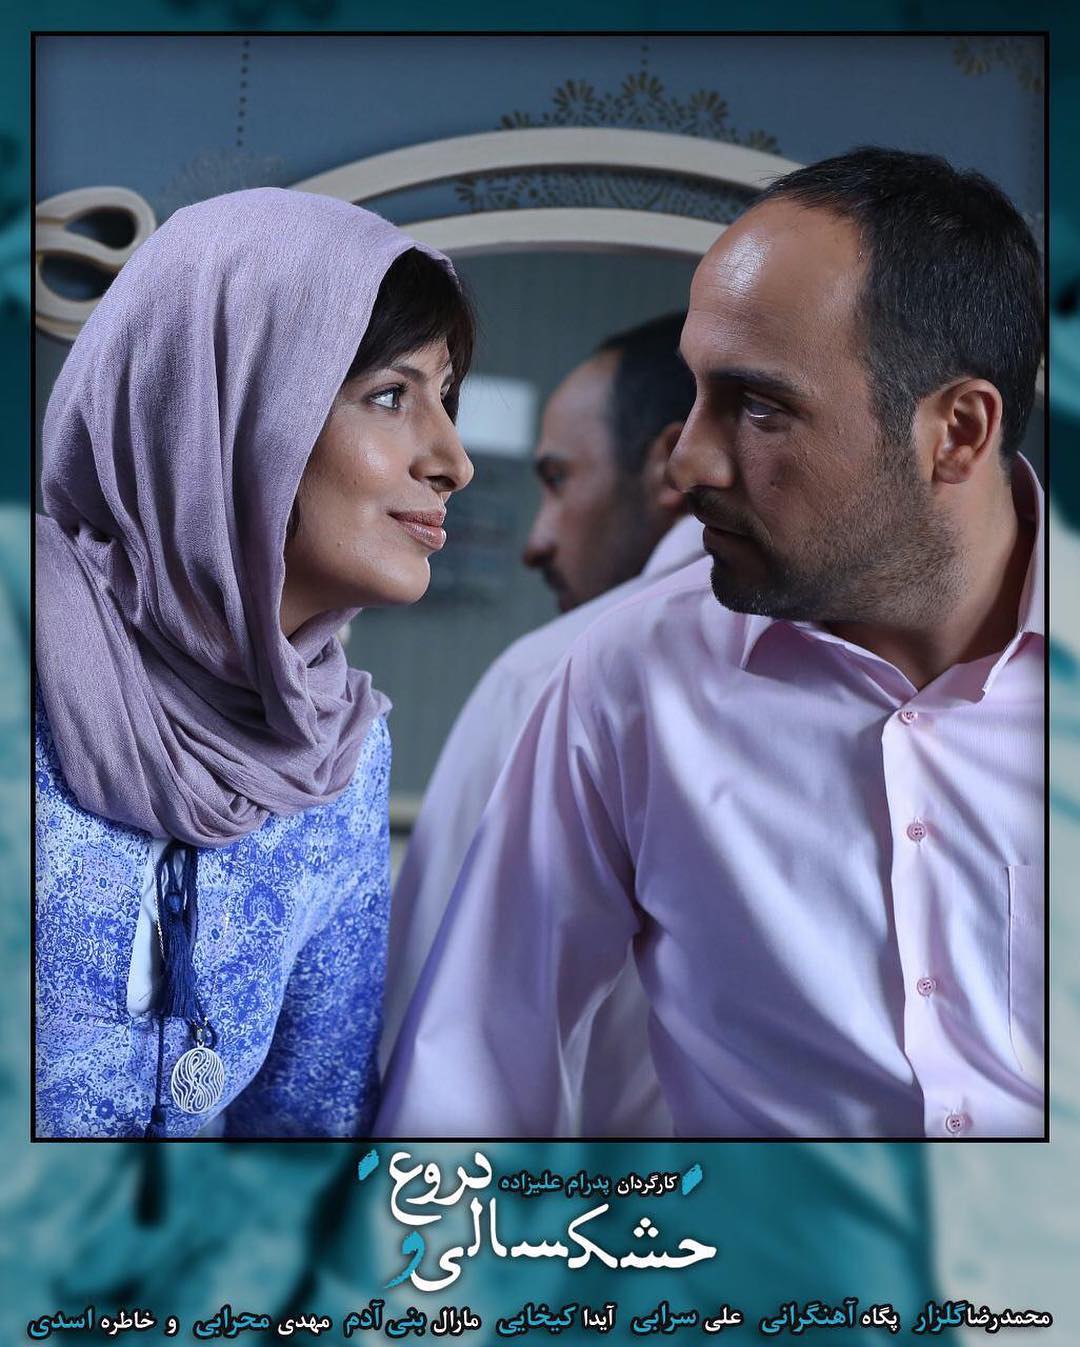 علی سرابی در پشت صحنه فیلم سینمایی خشکسالی و دروغ به همراه آیدا کیخایی